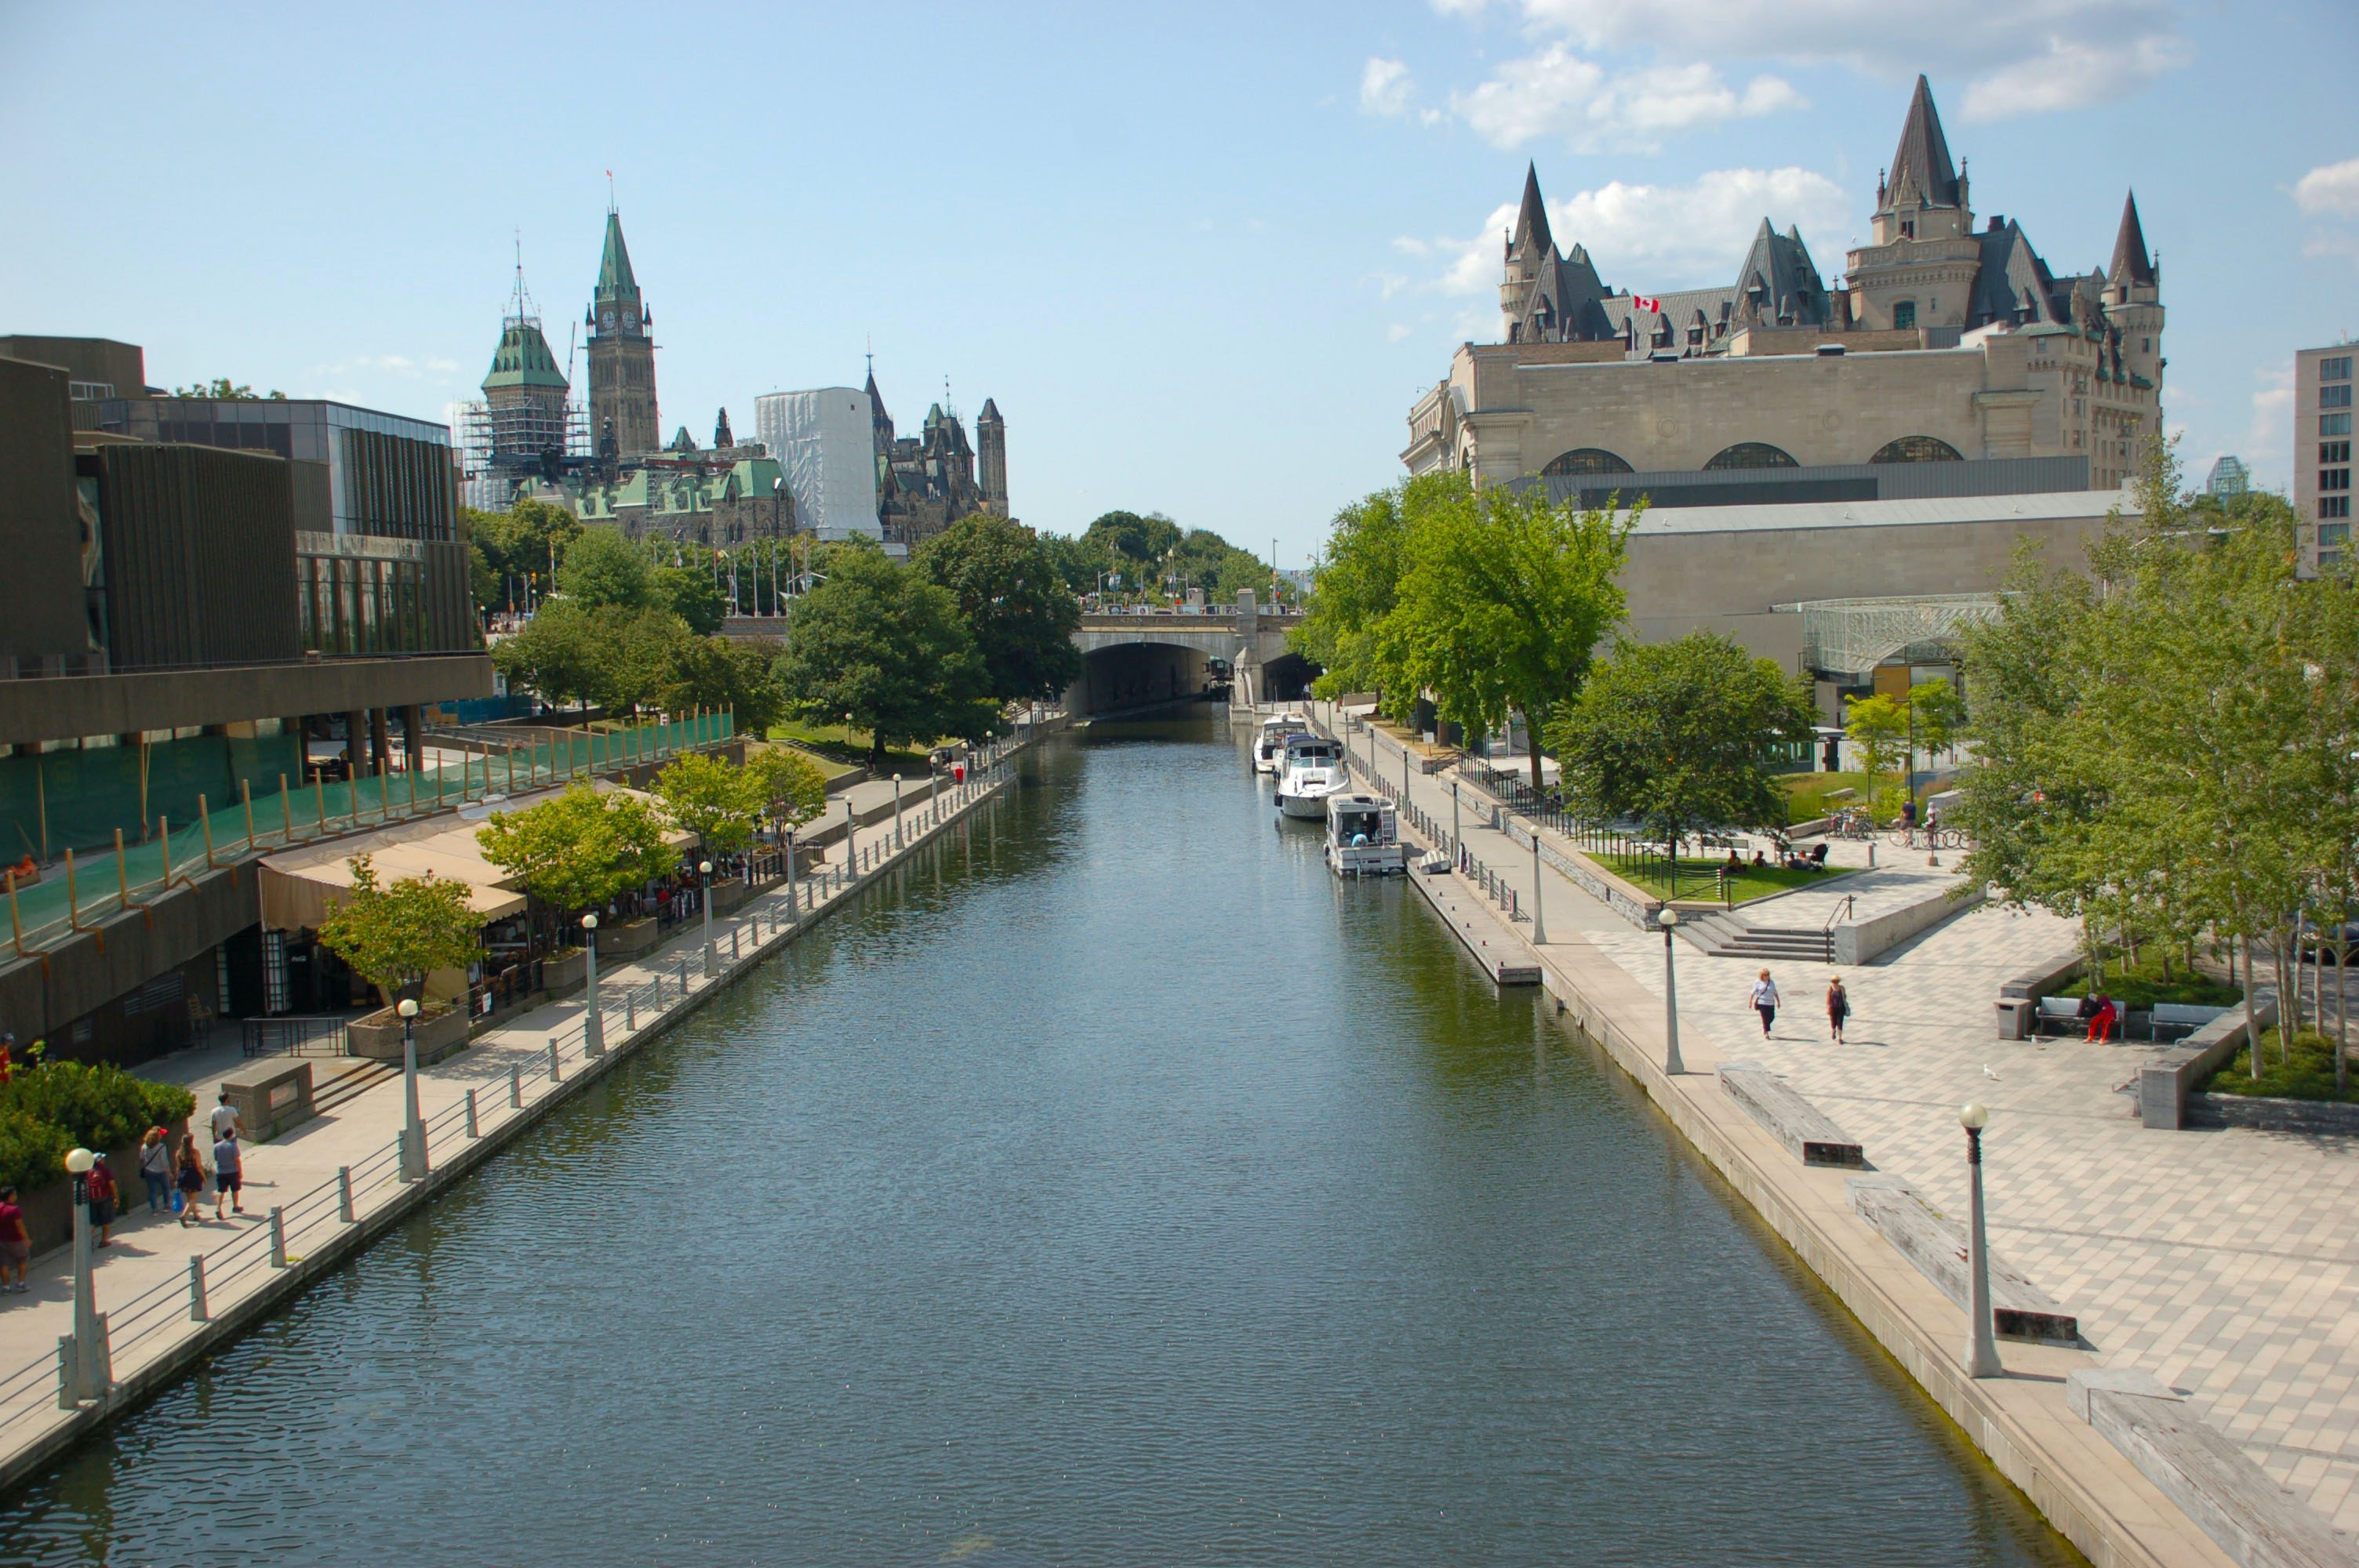 Le Canal Rideau au centre-ville d'Ottawa